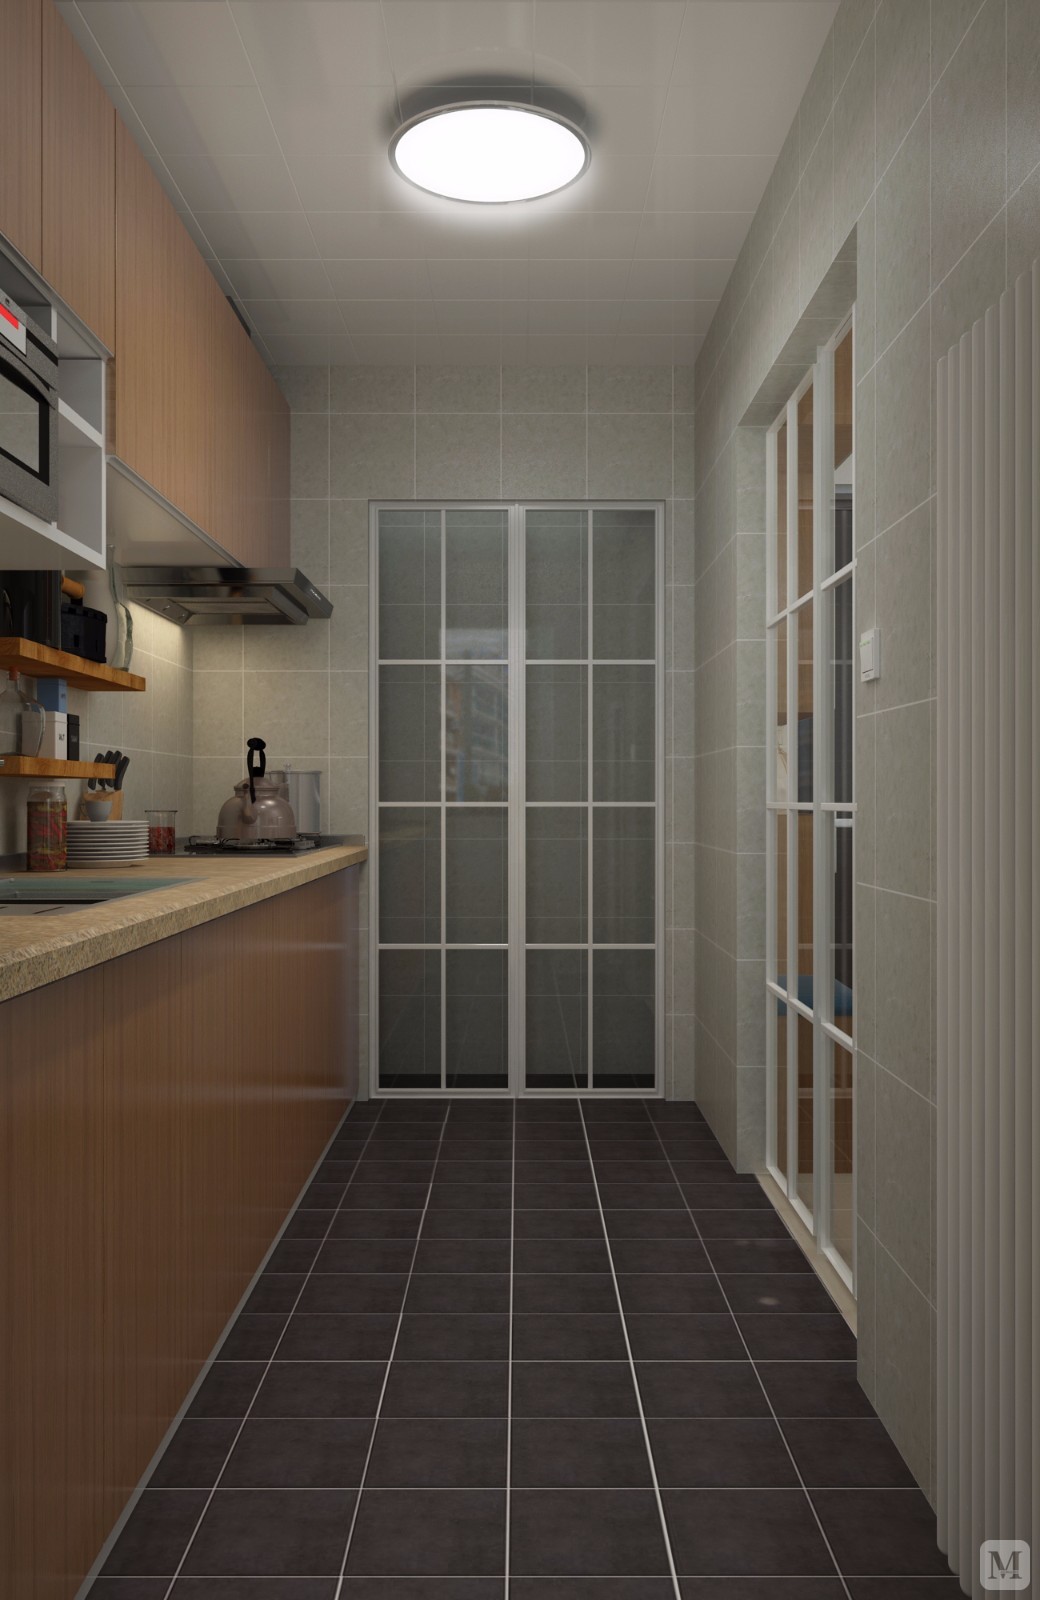 厨房简单明了，色调简洁大方。厨房与阳台相通，增大空间感，增强光线通透度。